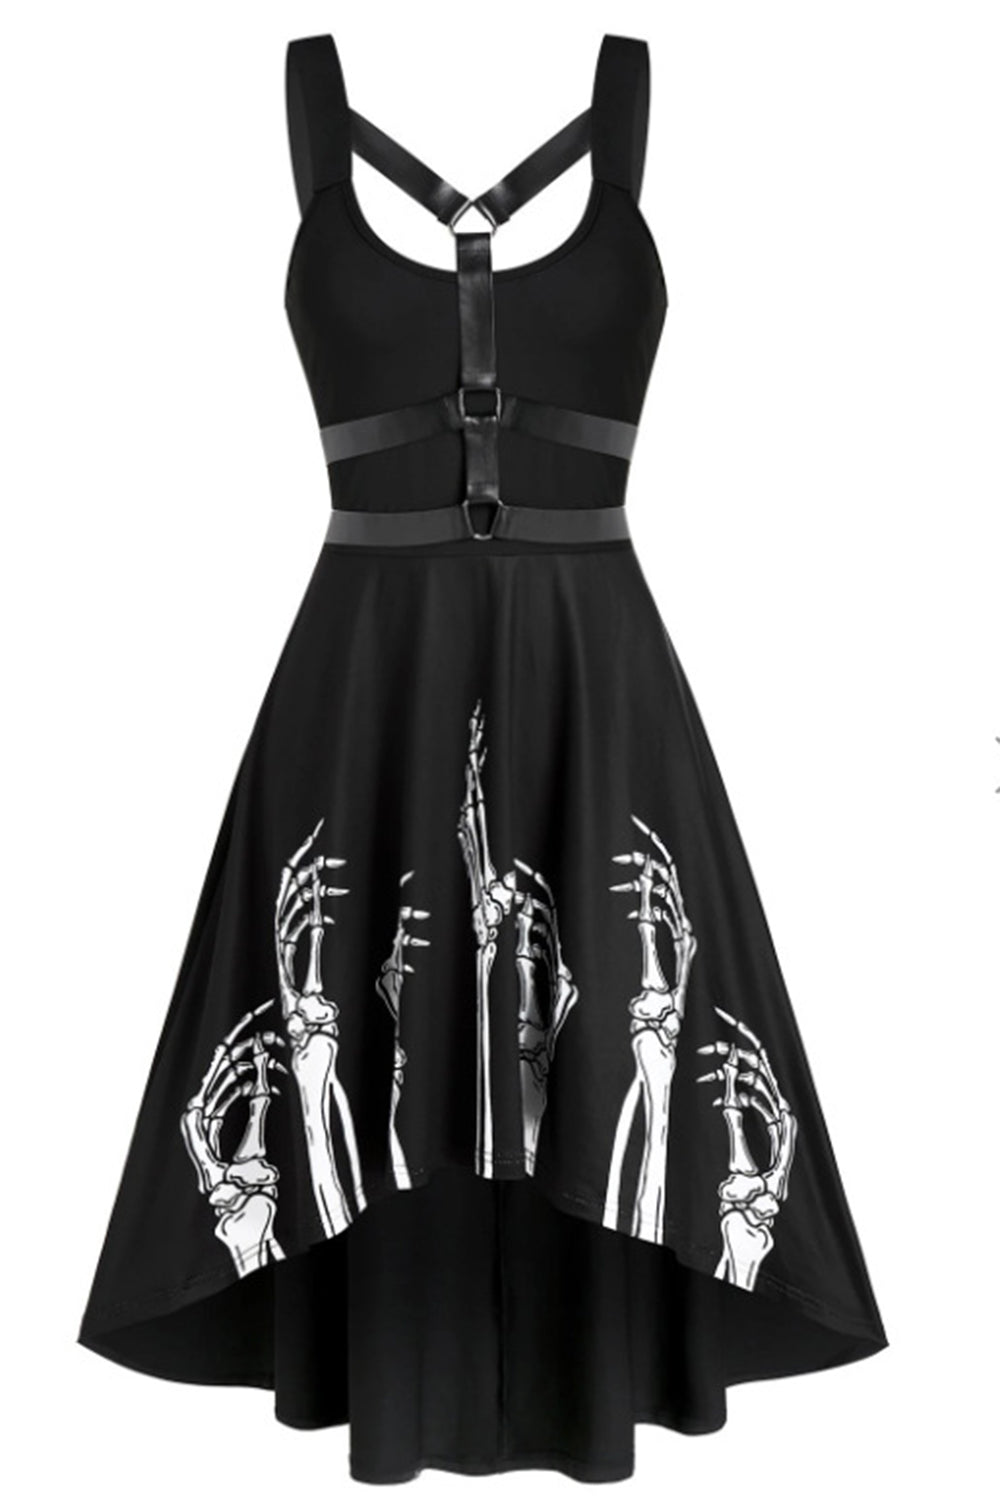 Black Scoop Neck Vintage Halloween Dress